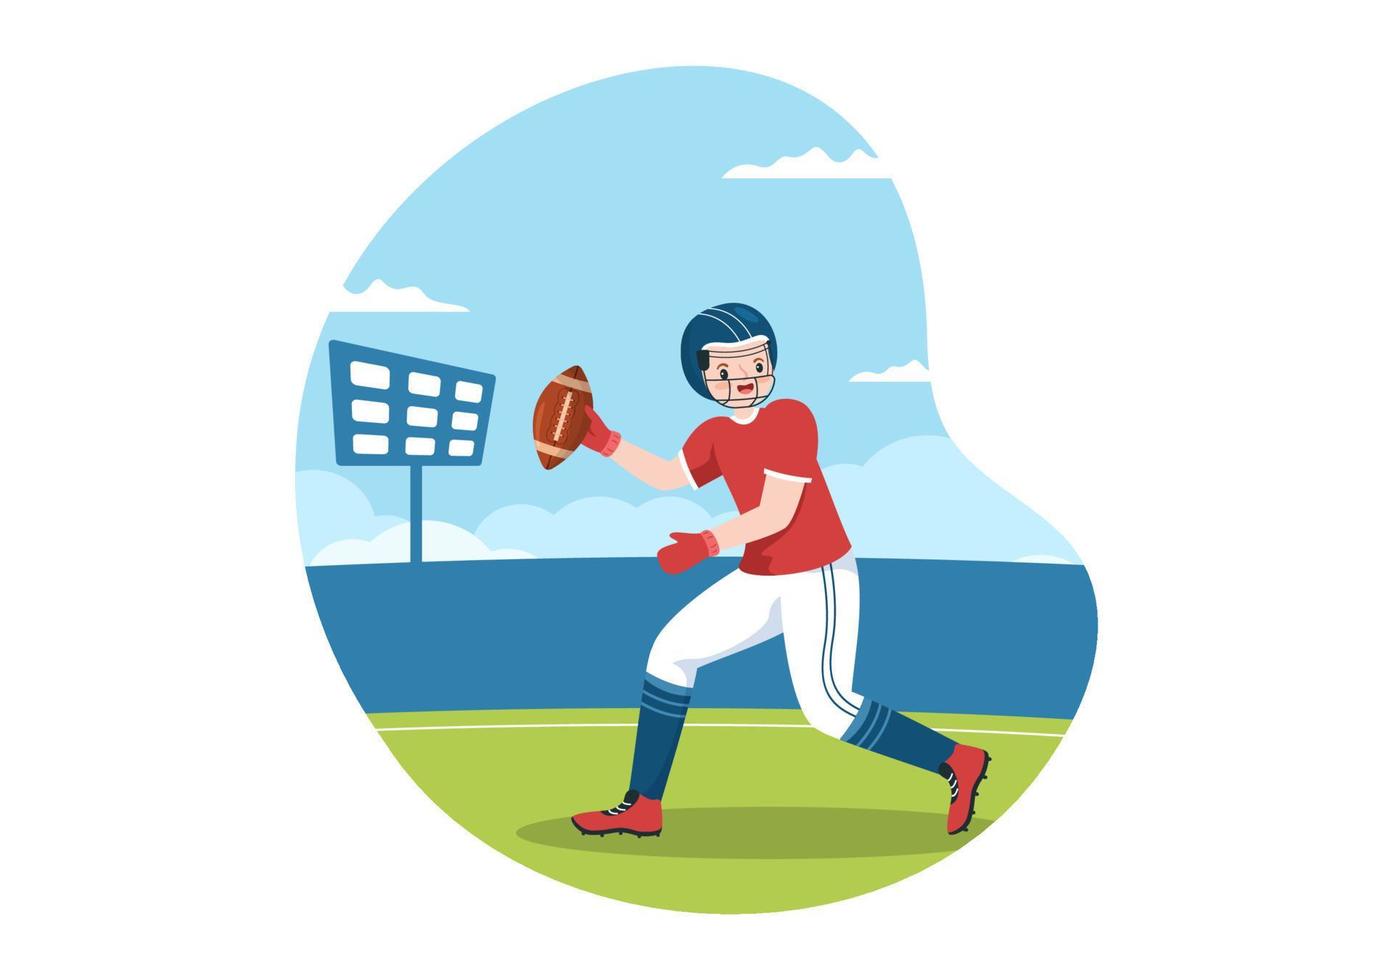 American-Football-Sportspieler mit dem Spiel verwendet einen ovalen Ball und ist braun auf dem Feld, handgezeichnete Cartoon-Flachillustration vektor